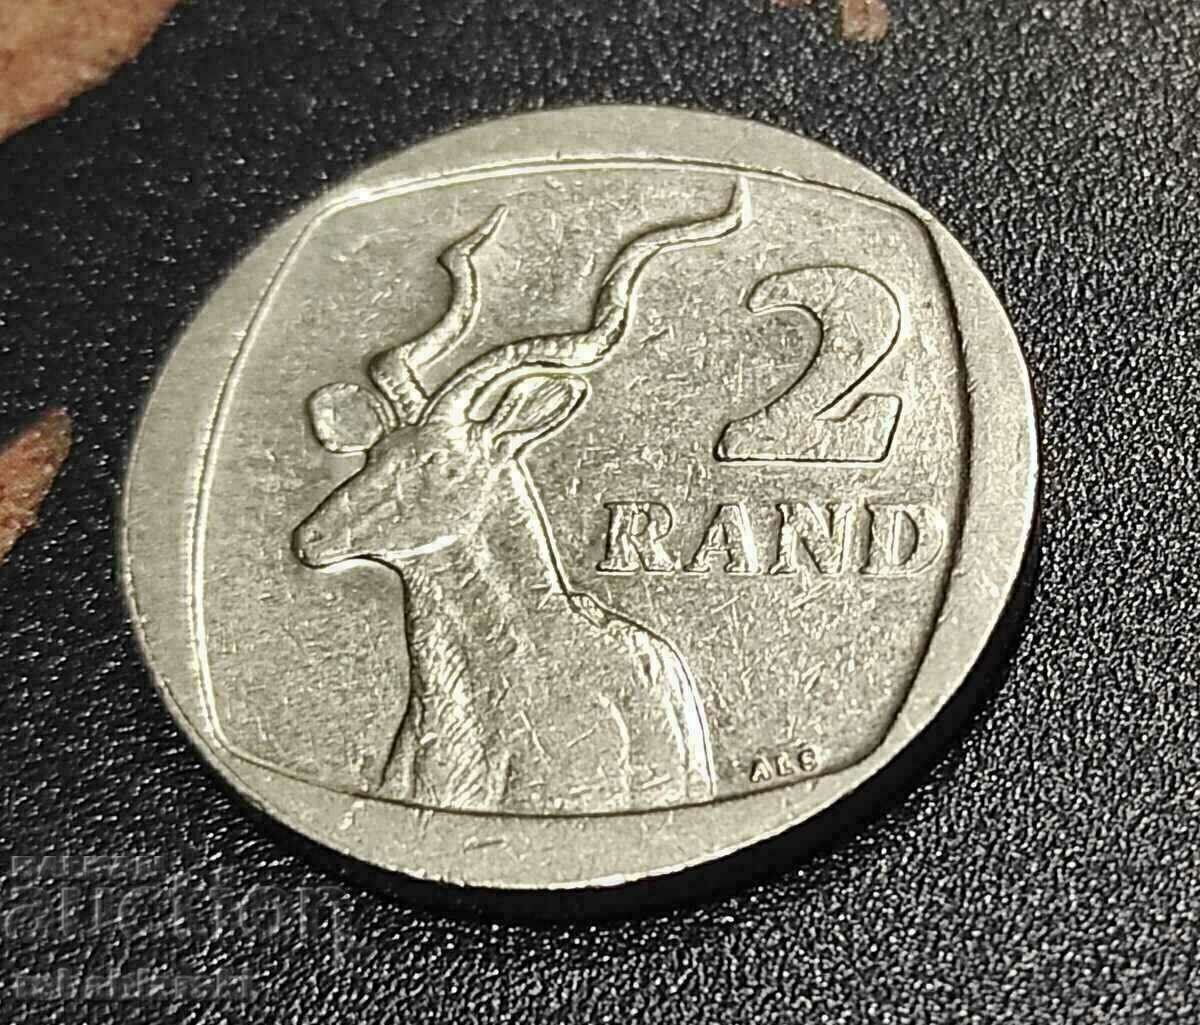 Africa de Sud 2 rand, 2007